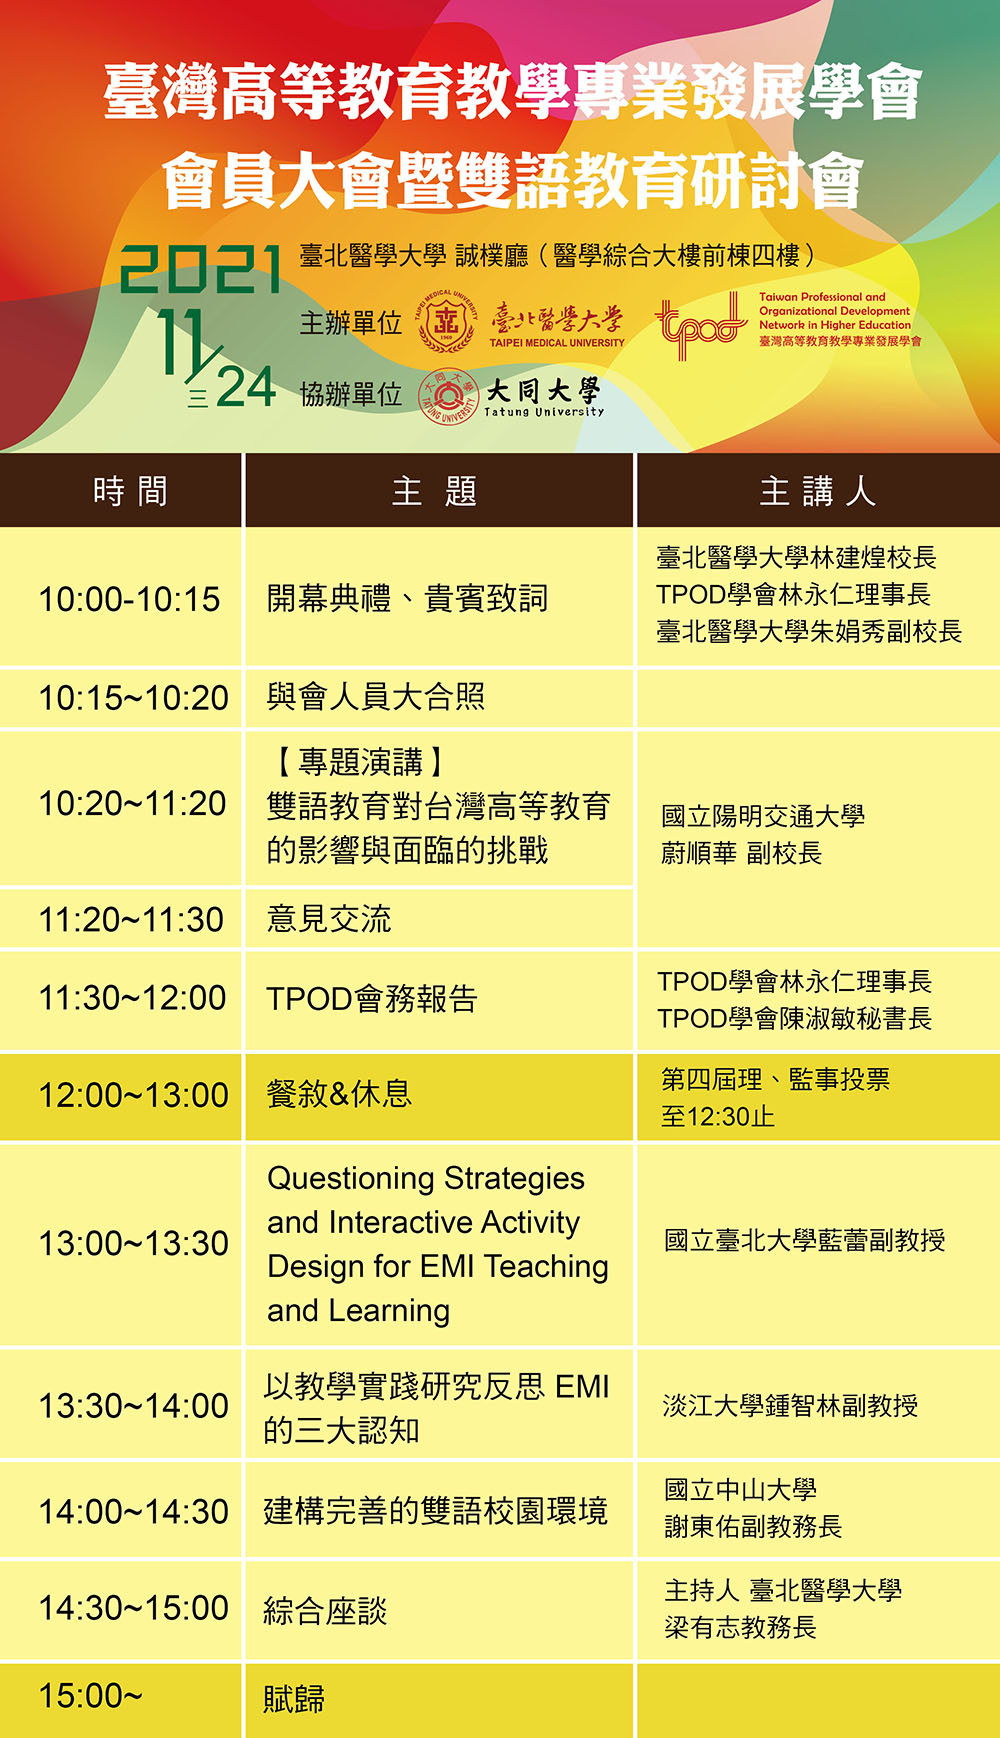 臺灣高等教育教學專業發展學會會員大會暨雙語教育研討會海報